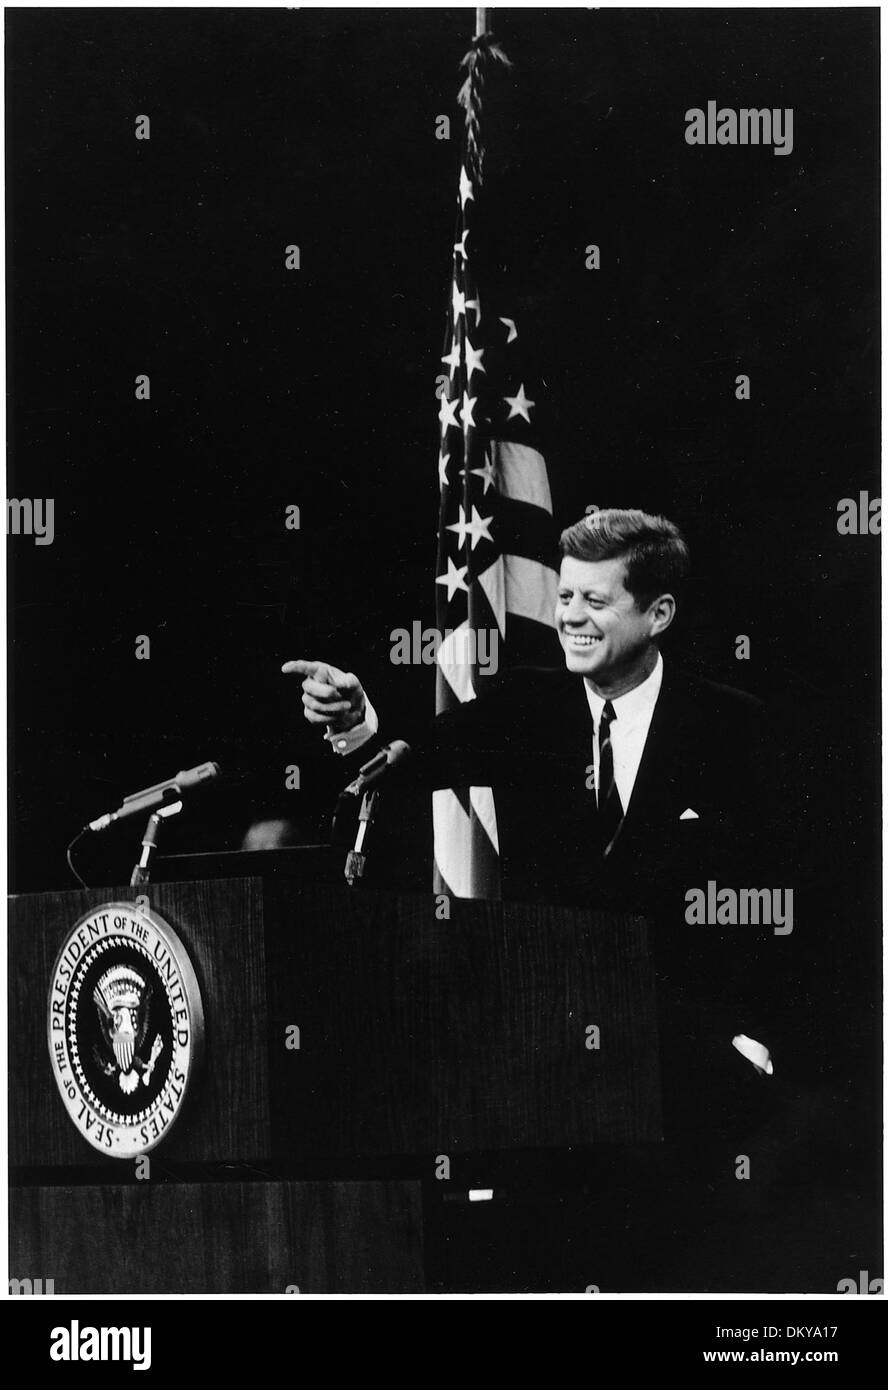 Pressekonferenz. Präsident Kennedy. Staatliche Abt. Auditorium in Washington, D.C. 194182 Stockfoto